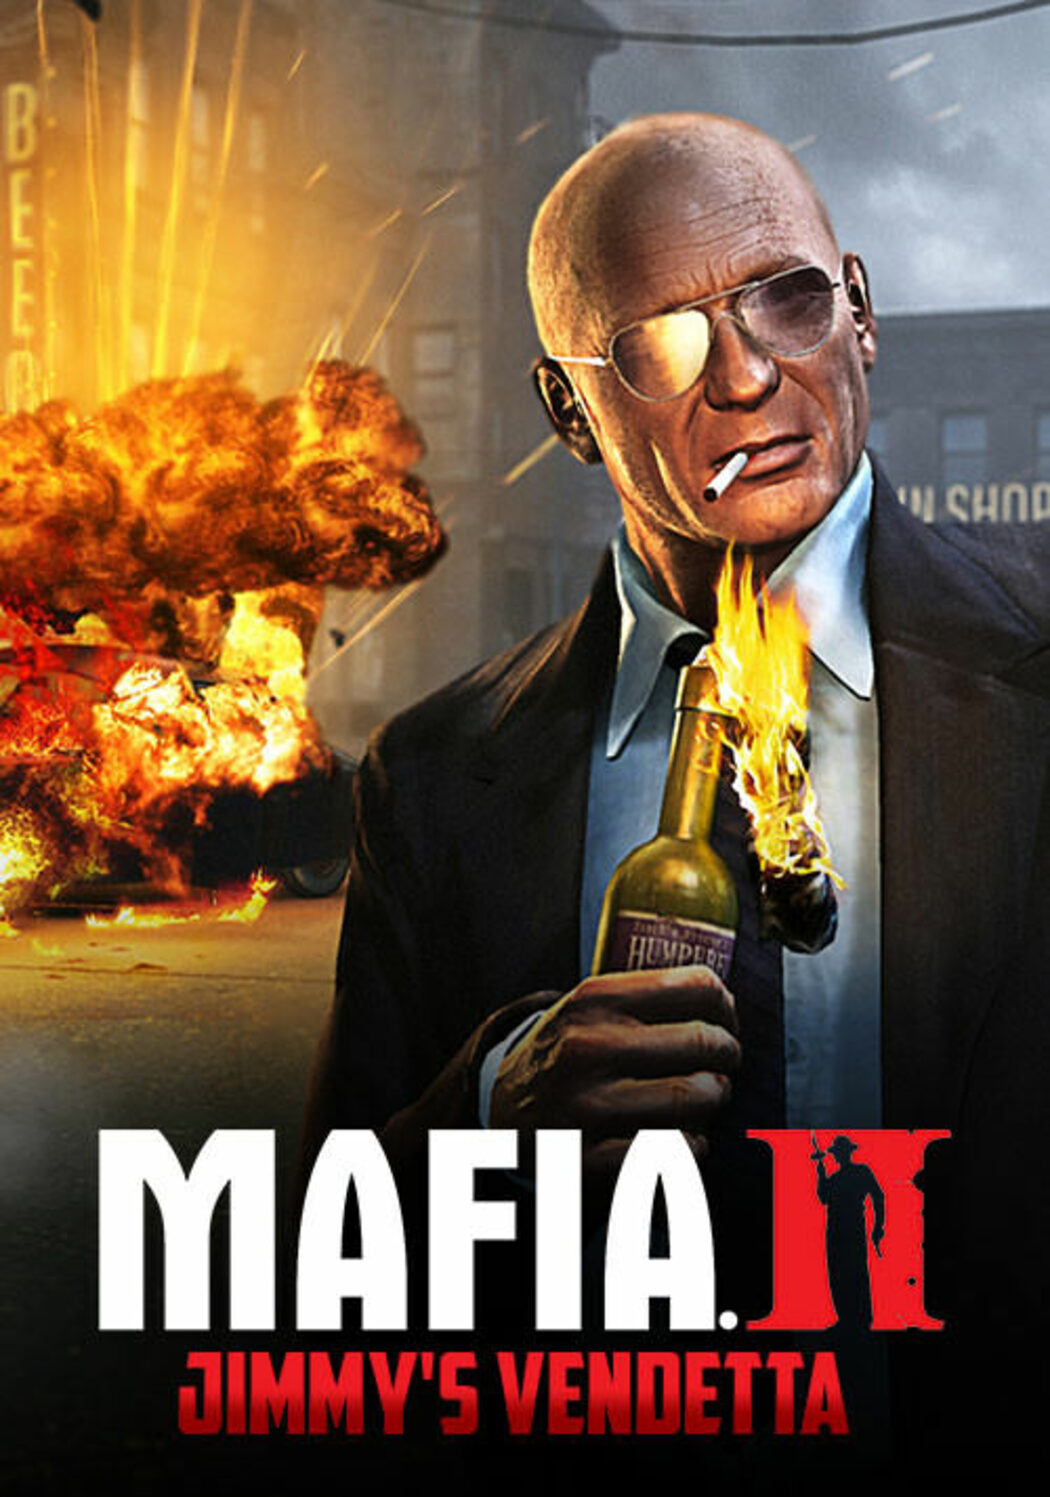 Mafia 3 Requisitos Mínimos y Recomendados